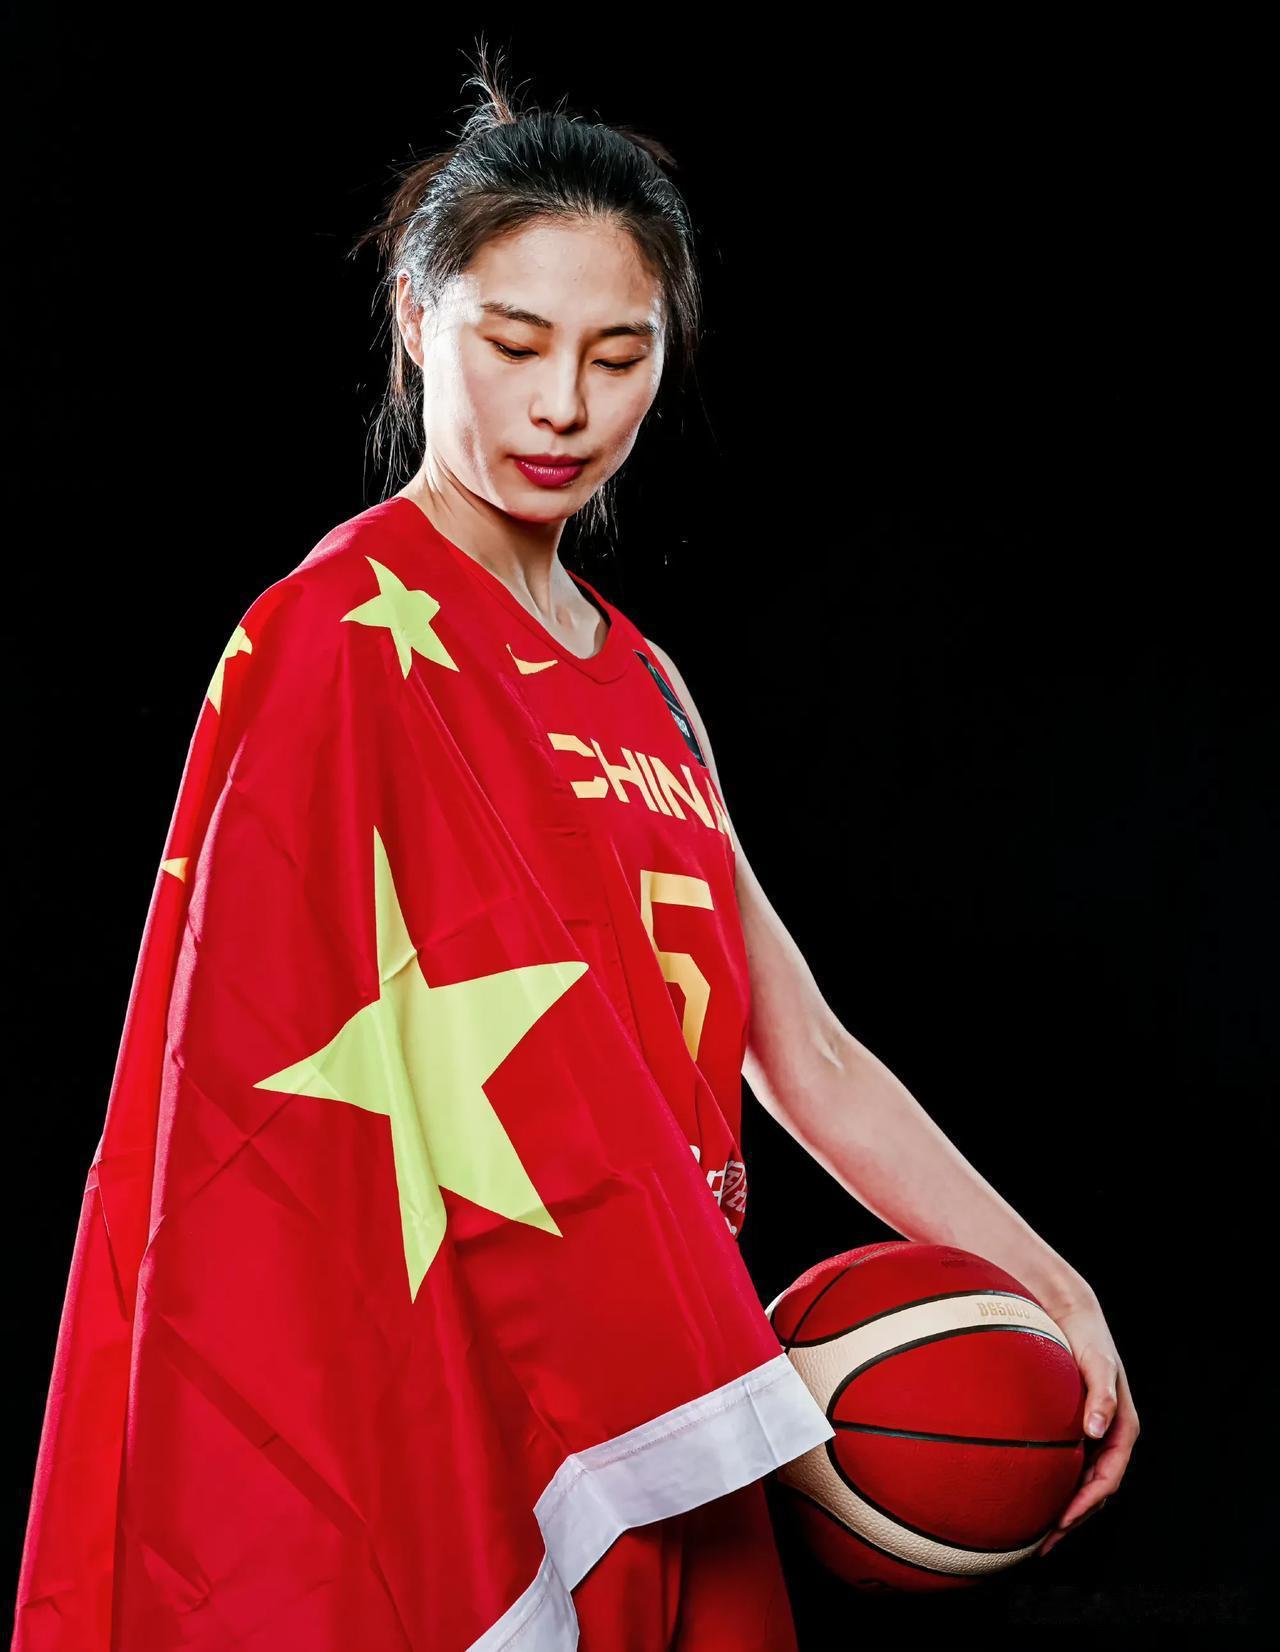 中国女篮
女篮亚洲杯倒计时1天，我心目中的预测首发阵容。
1、王思雨
2、杨力维(1)